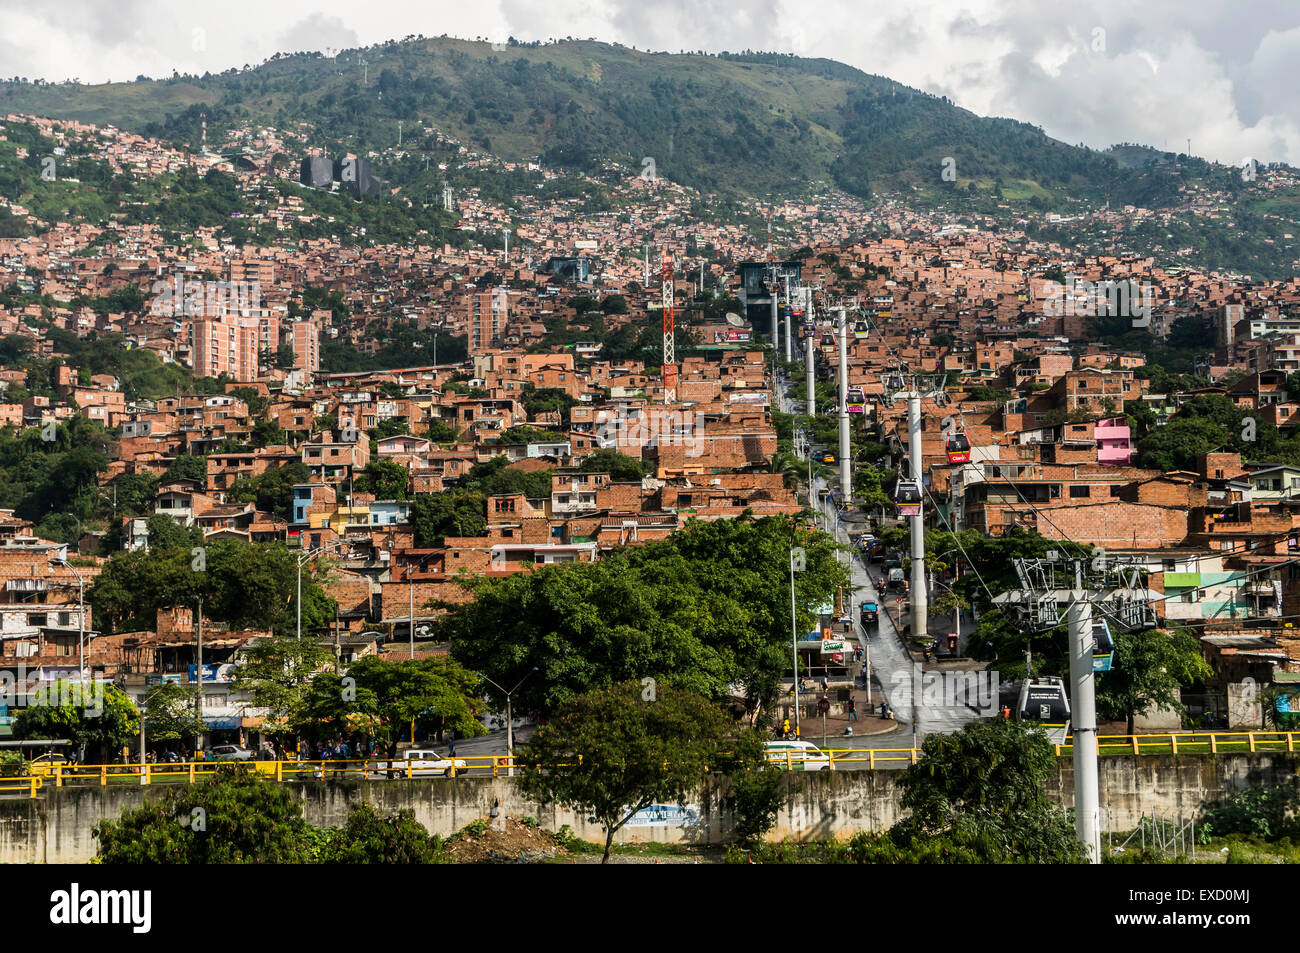 Ein Blick auf die unteren Einkommen Nachbarschaften am Hang über Medellin, Kolumbien von der Straßenbahnhaltestelle Teleférico oder in der Luft. Stockfoto